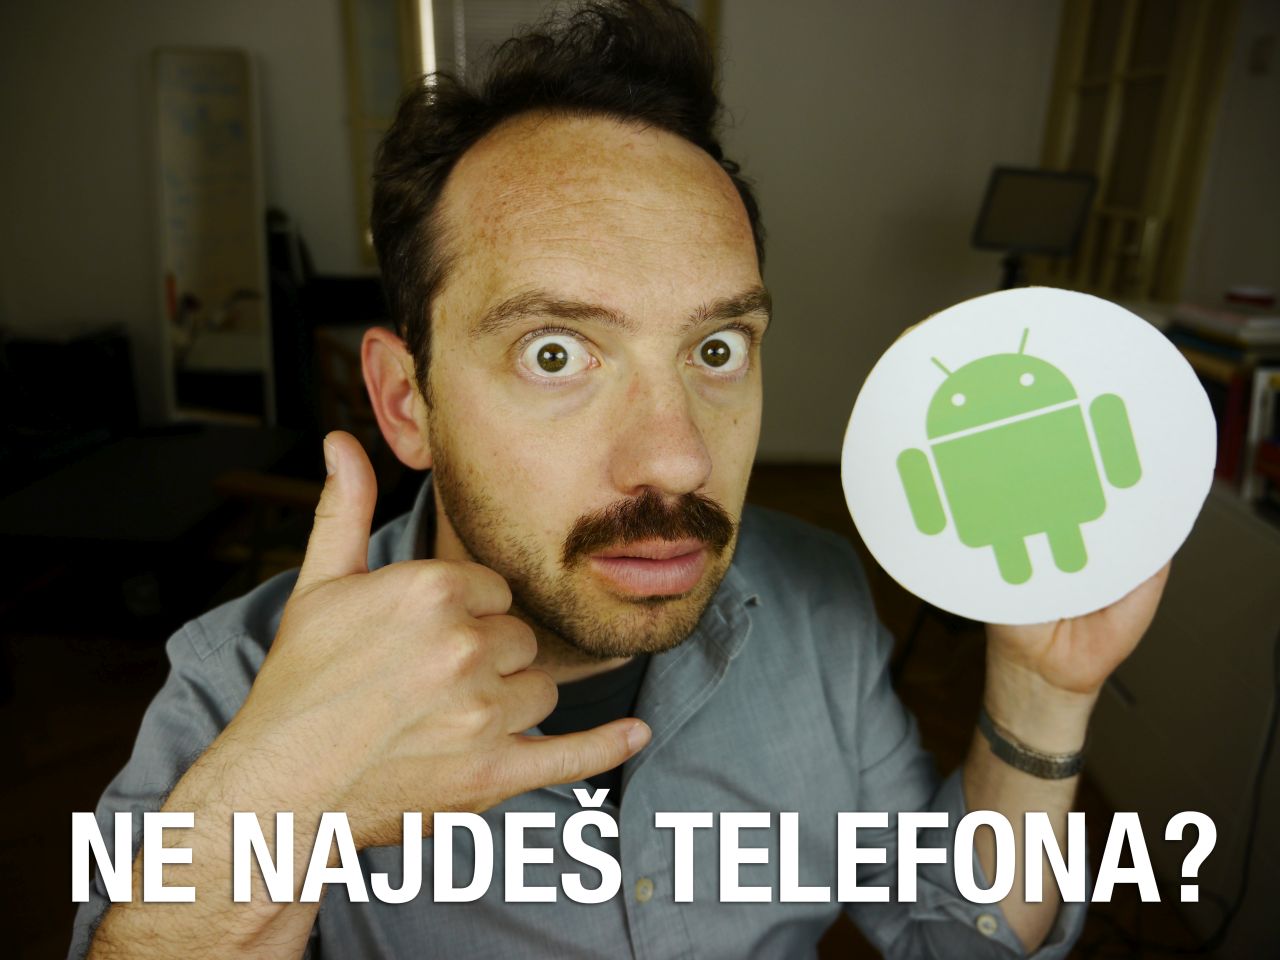 Naslovna slika videa, na kateri je Jože, ki z roko ponazarja telefon, v drugi pa drži kartonast simbol za Android